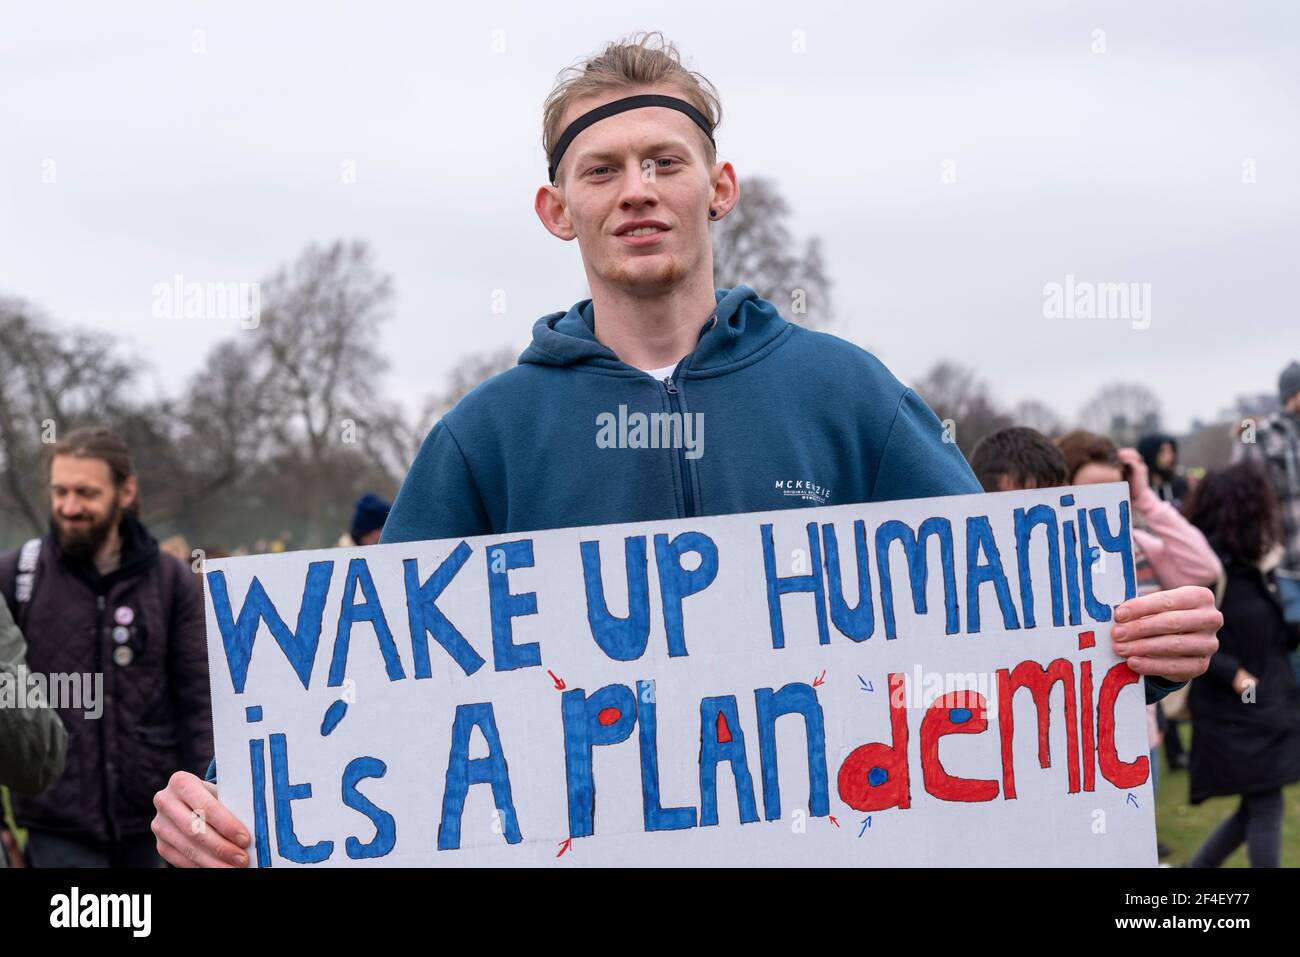 Un manifestant avec un écriteau de plpandémique lors d'une marche de protestation anti-verrouillage de la COVID 19 à Westminster, Londres, Royaume-Uni. Blanc caucasien avec signe de conspiration Banque D'Images